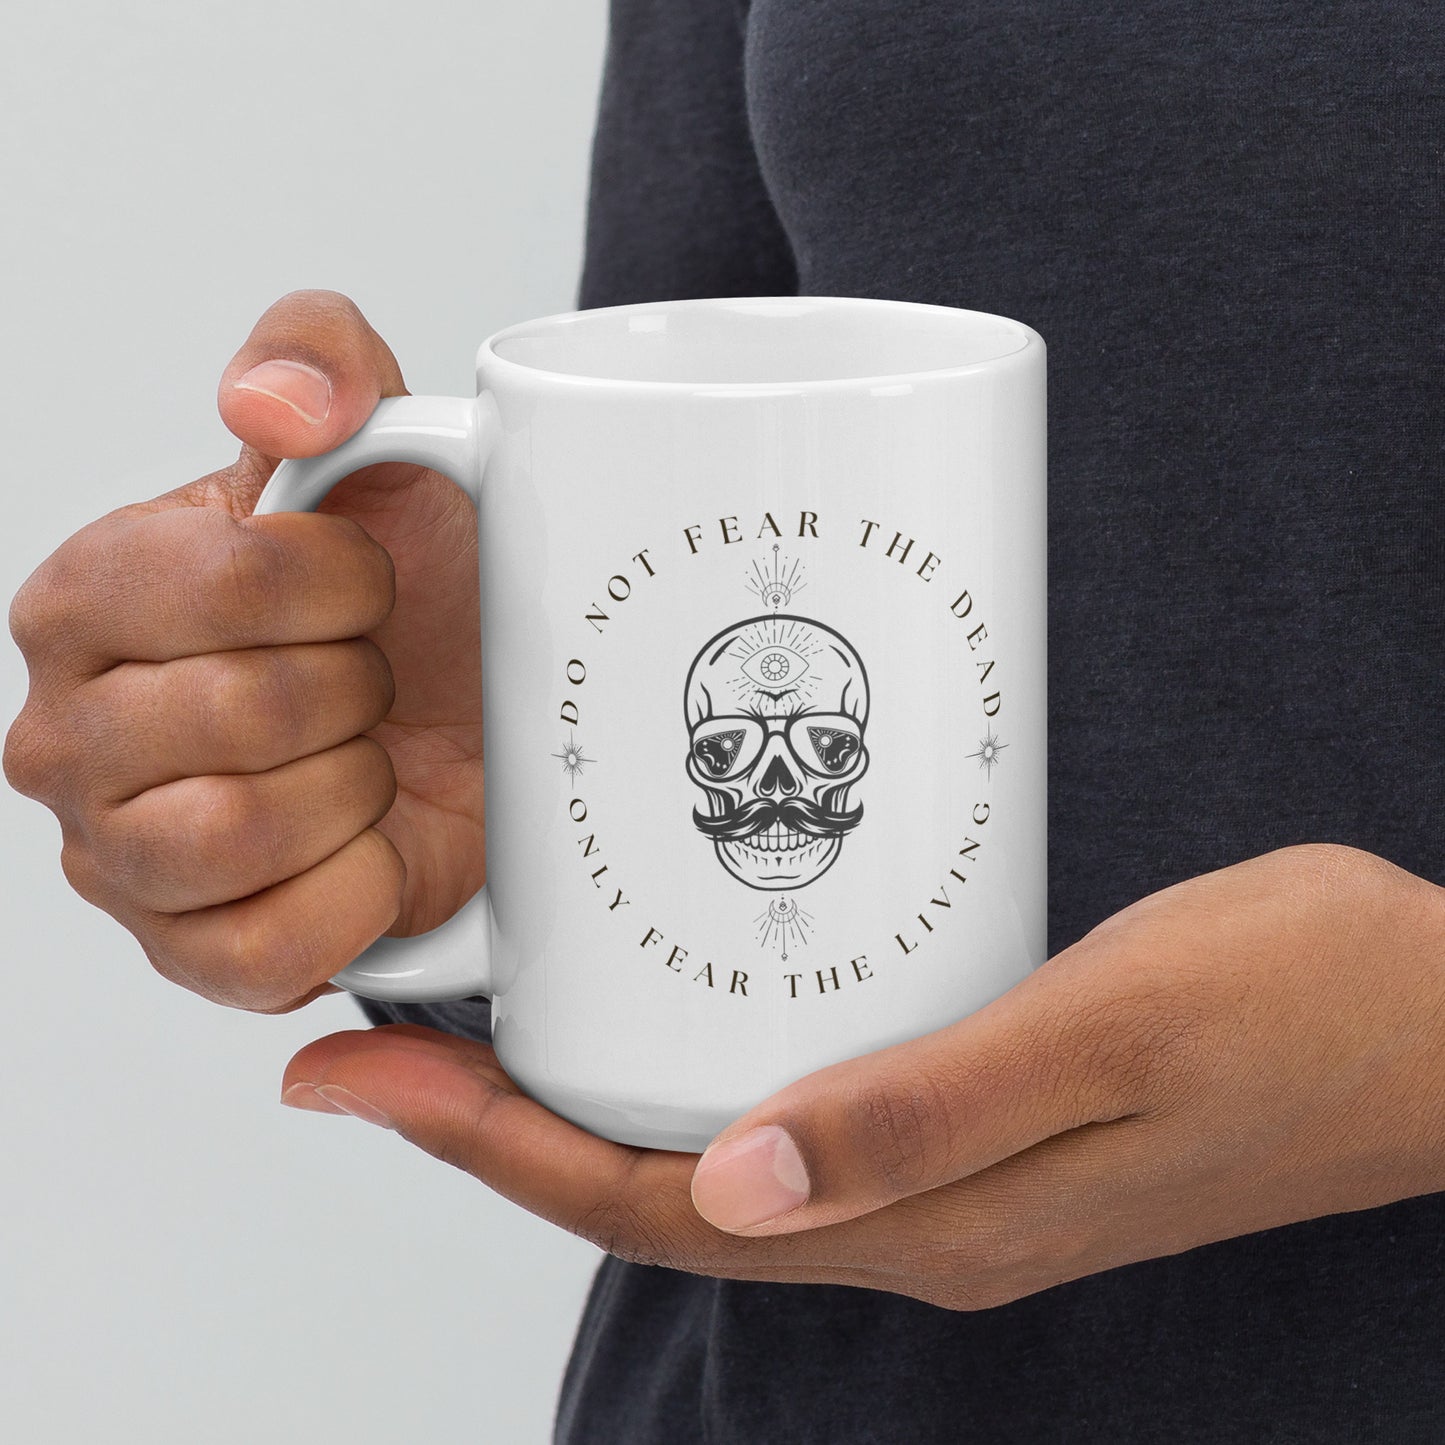 Only Fear the living Skull Mug White glossy mug